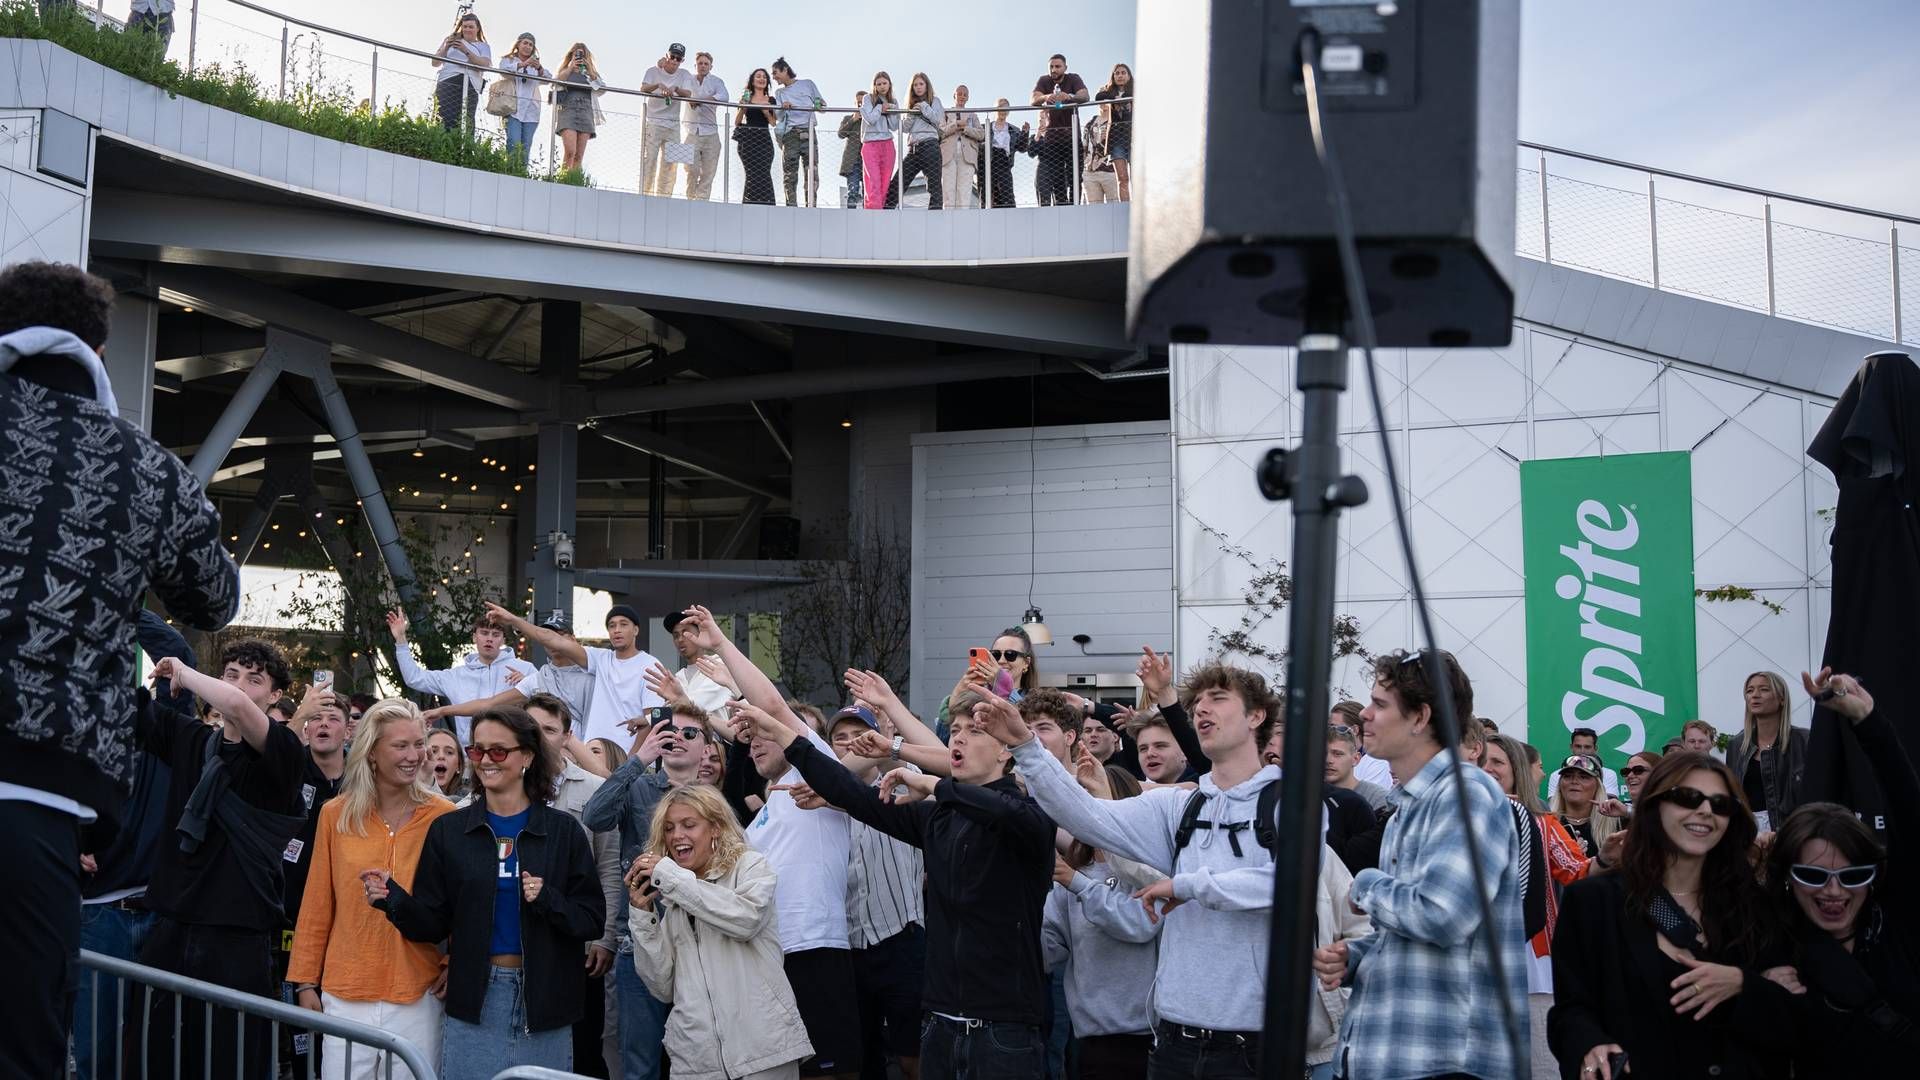 Til lanceringen af den opdaterede Sprite spiller rapartisterne Lamin og Svea S foran en blanding af branchefolk, skimiljøet omkring skibakken, influencere og forbrugere, der har fået nys om arrangementet. | Foto: Coca Cola Pr